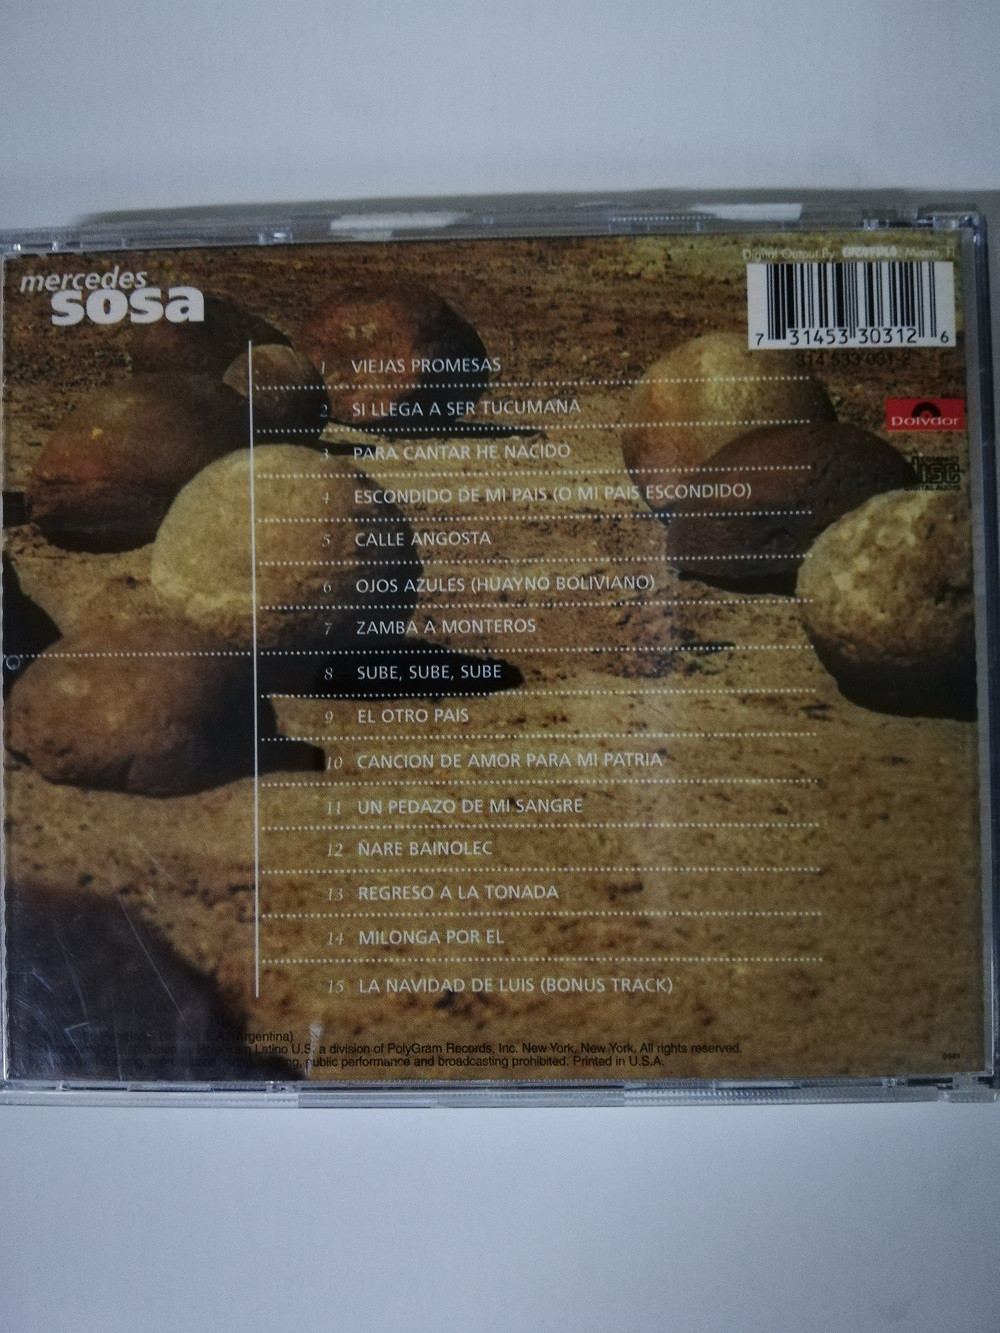 Imagen CD MERCEDES SOSA - ESCONDIDO EN MI PAÍS 2